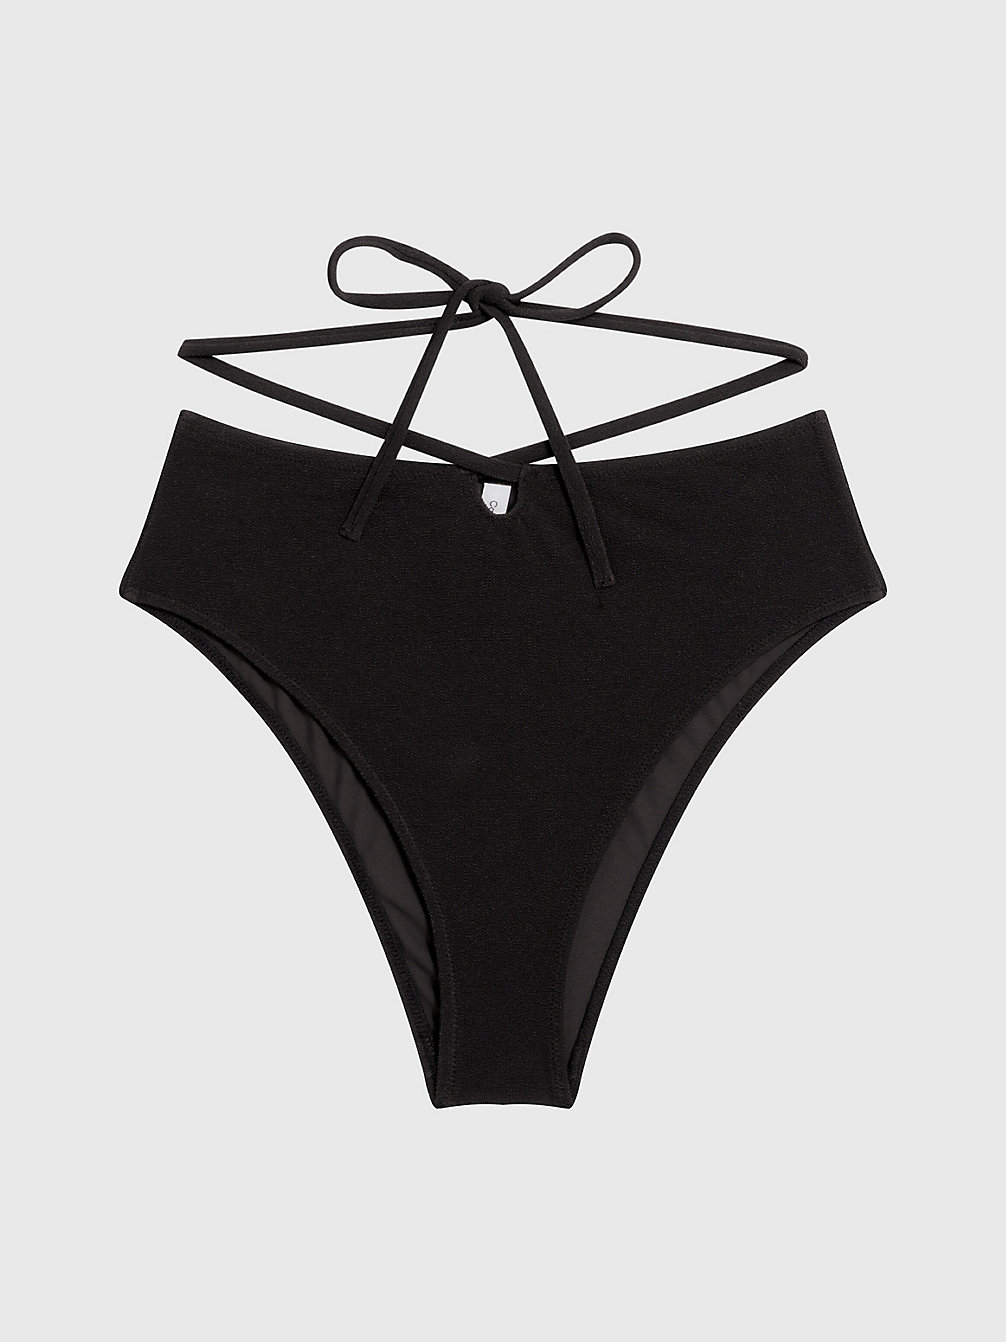 PVH BLACK High Waisted Bikini Bottoms - CK Texture undefined women Calvin Klein